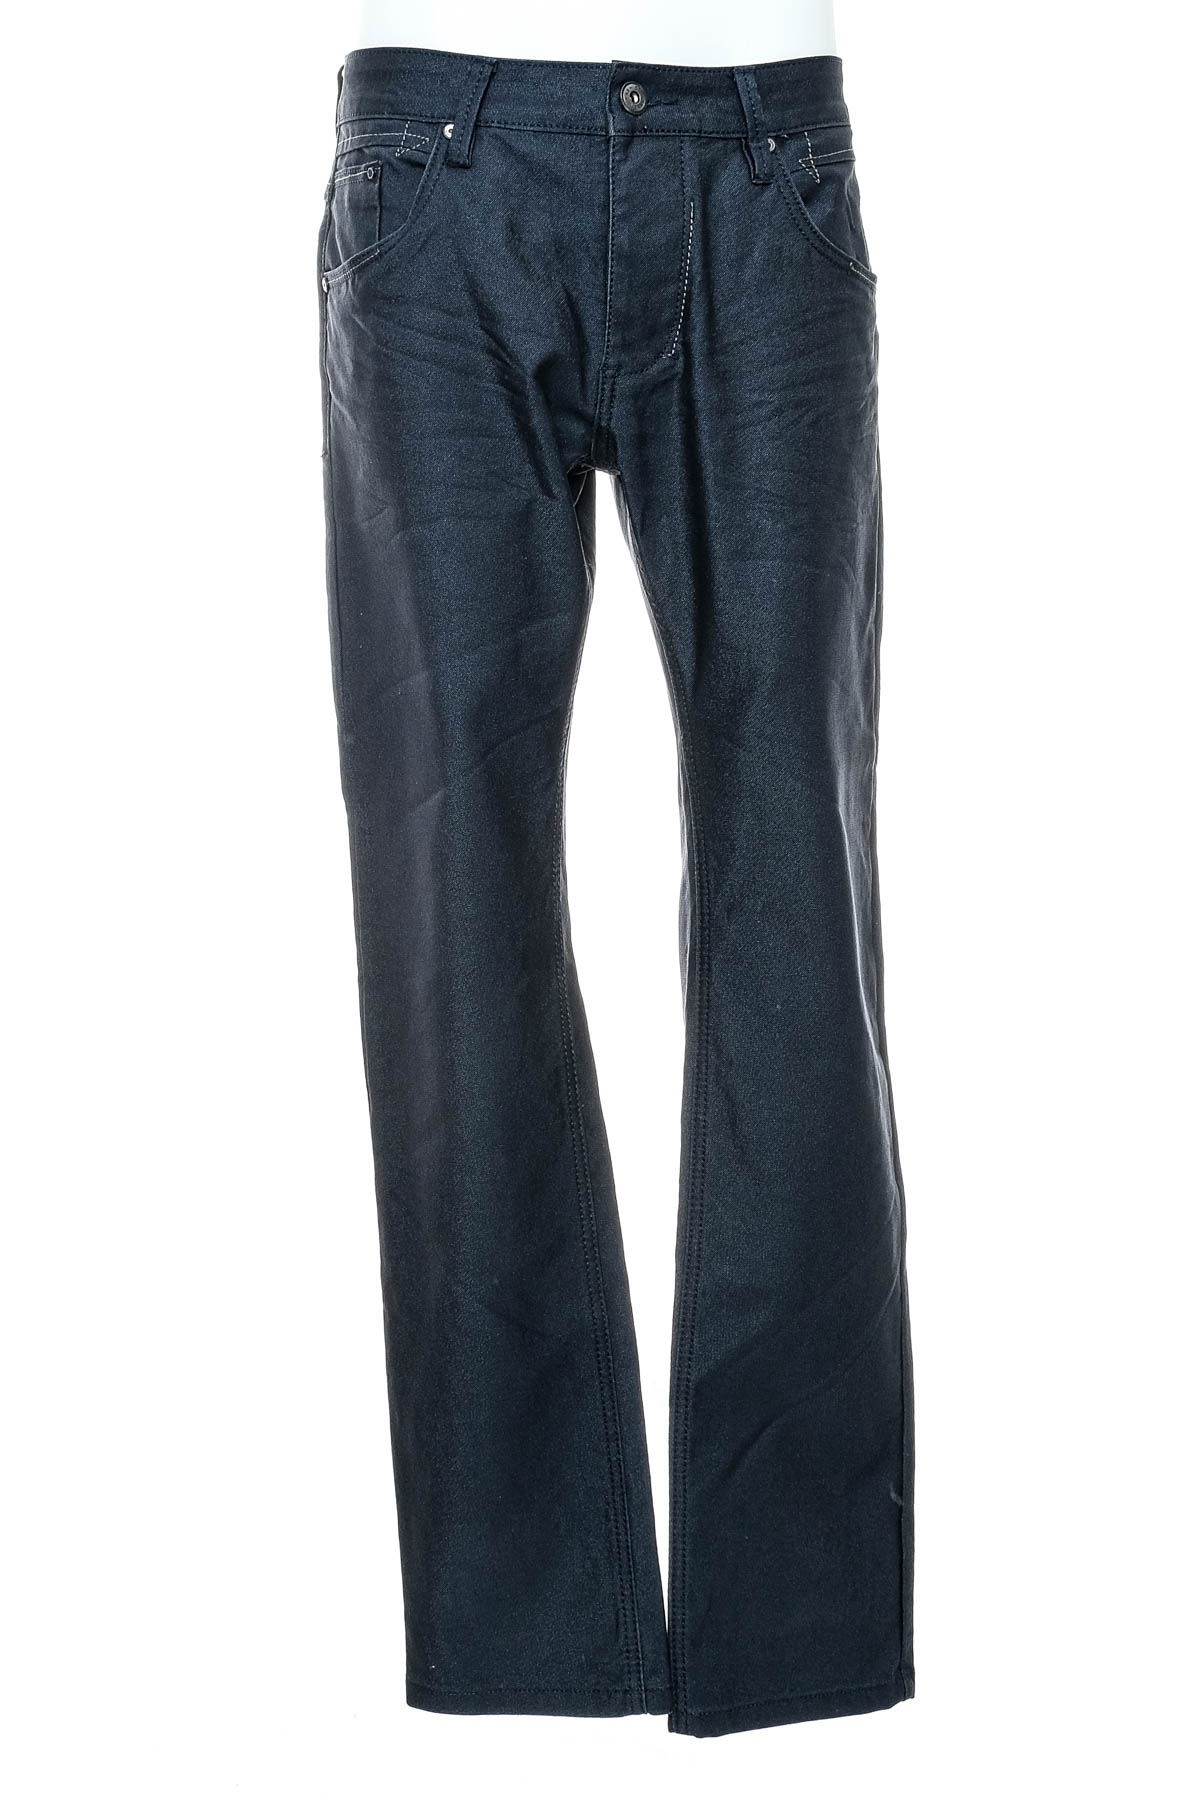 Pantalon pentru bărbați - WANGU JEANS - 0